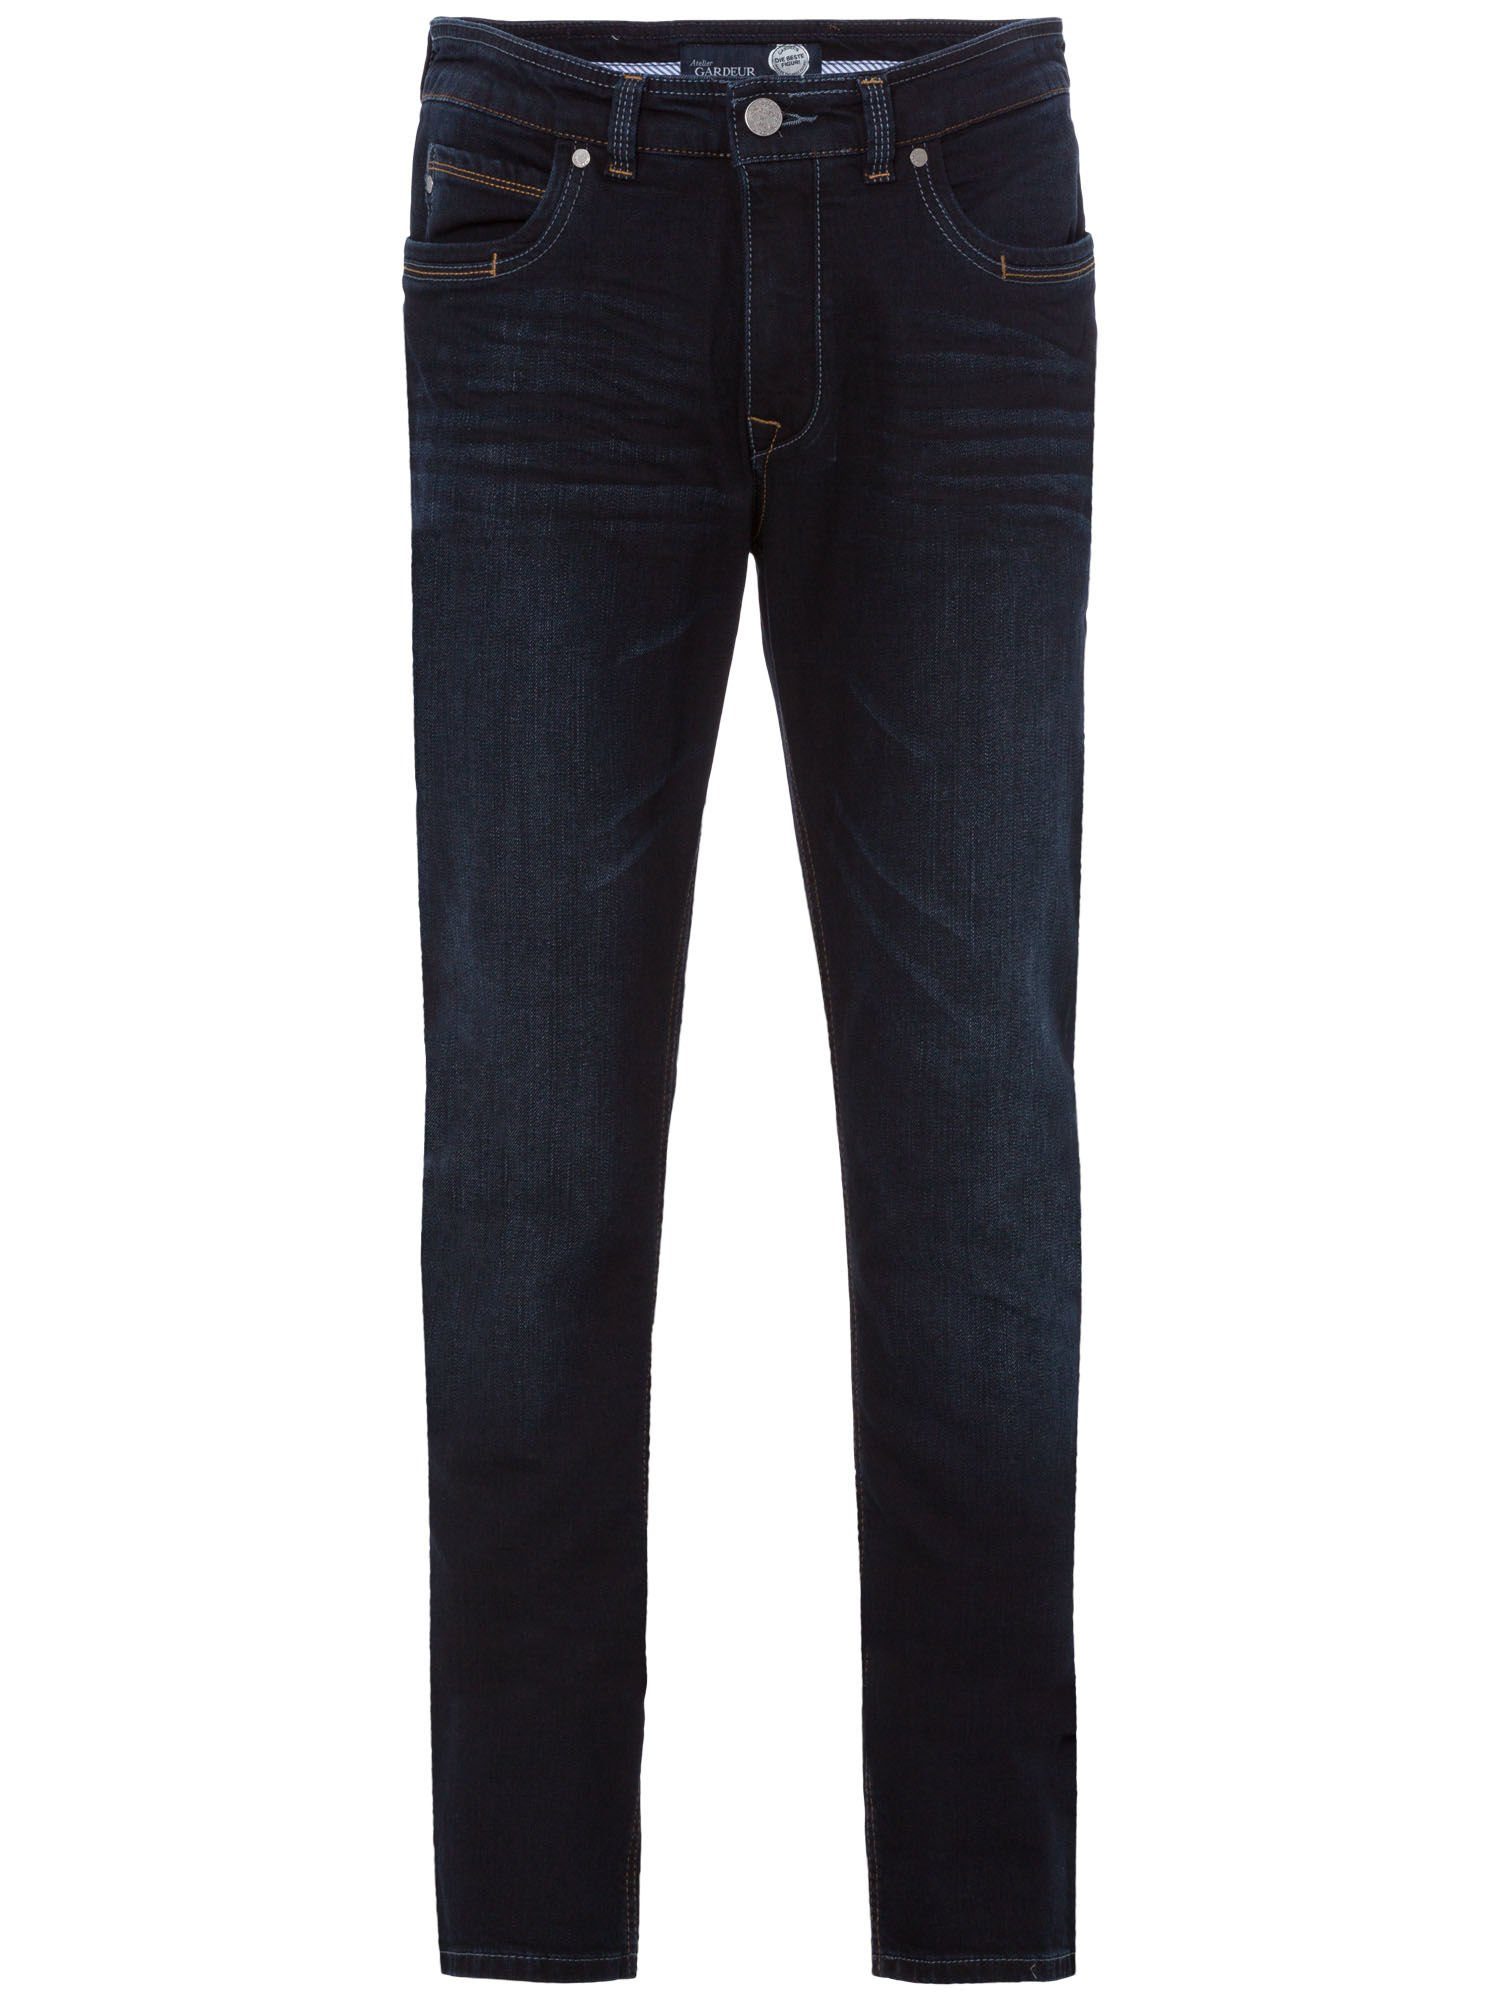 Atelier GARDEUR 5-Pocket-Jeans used GARDEUR BATU rinse ATELIER SUPERFLEX blue light dark - 0-71001-169